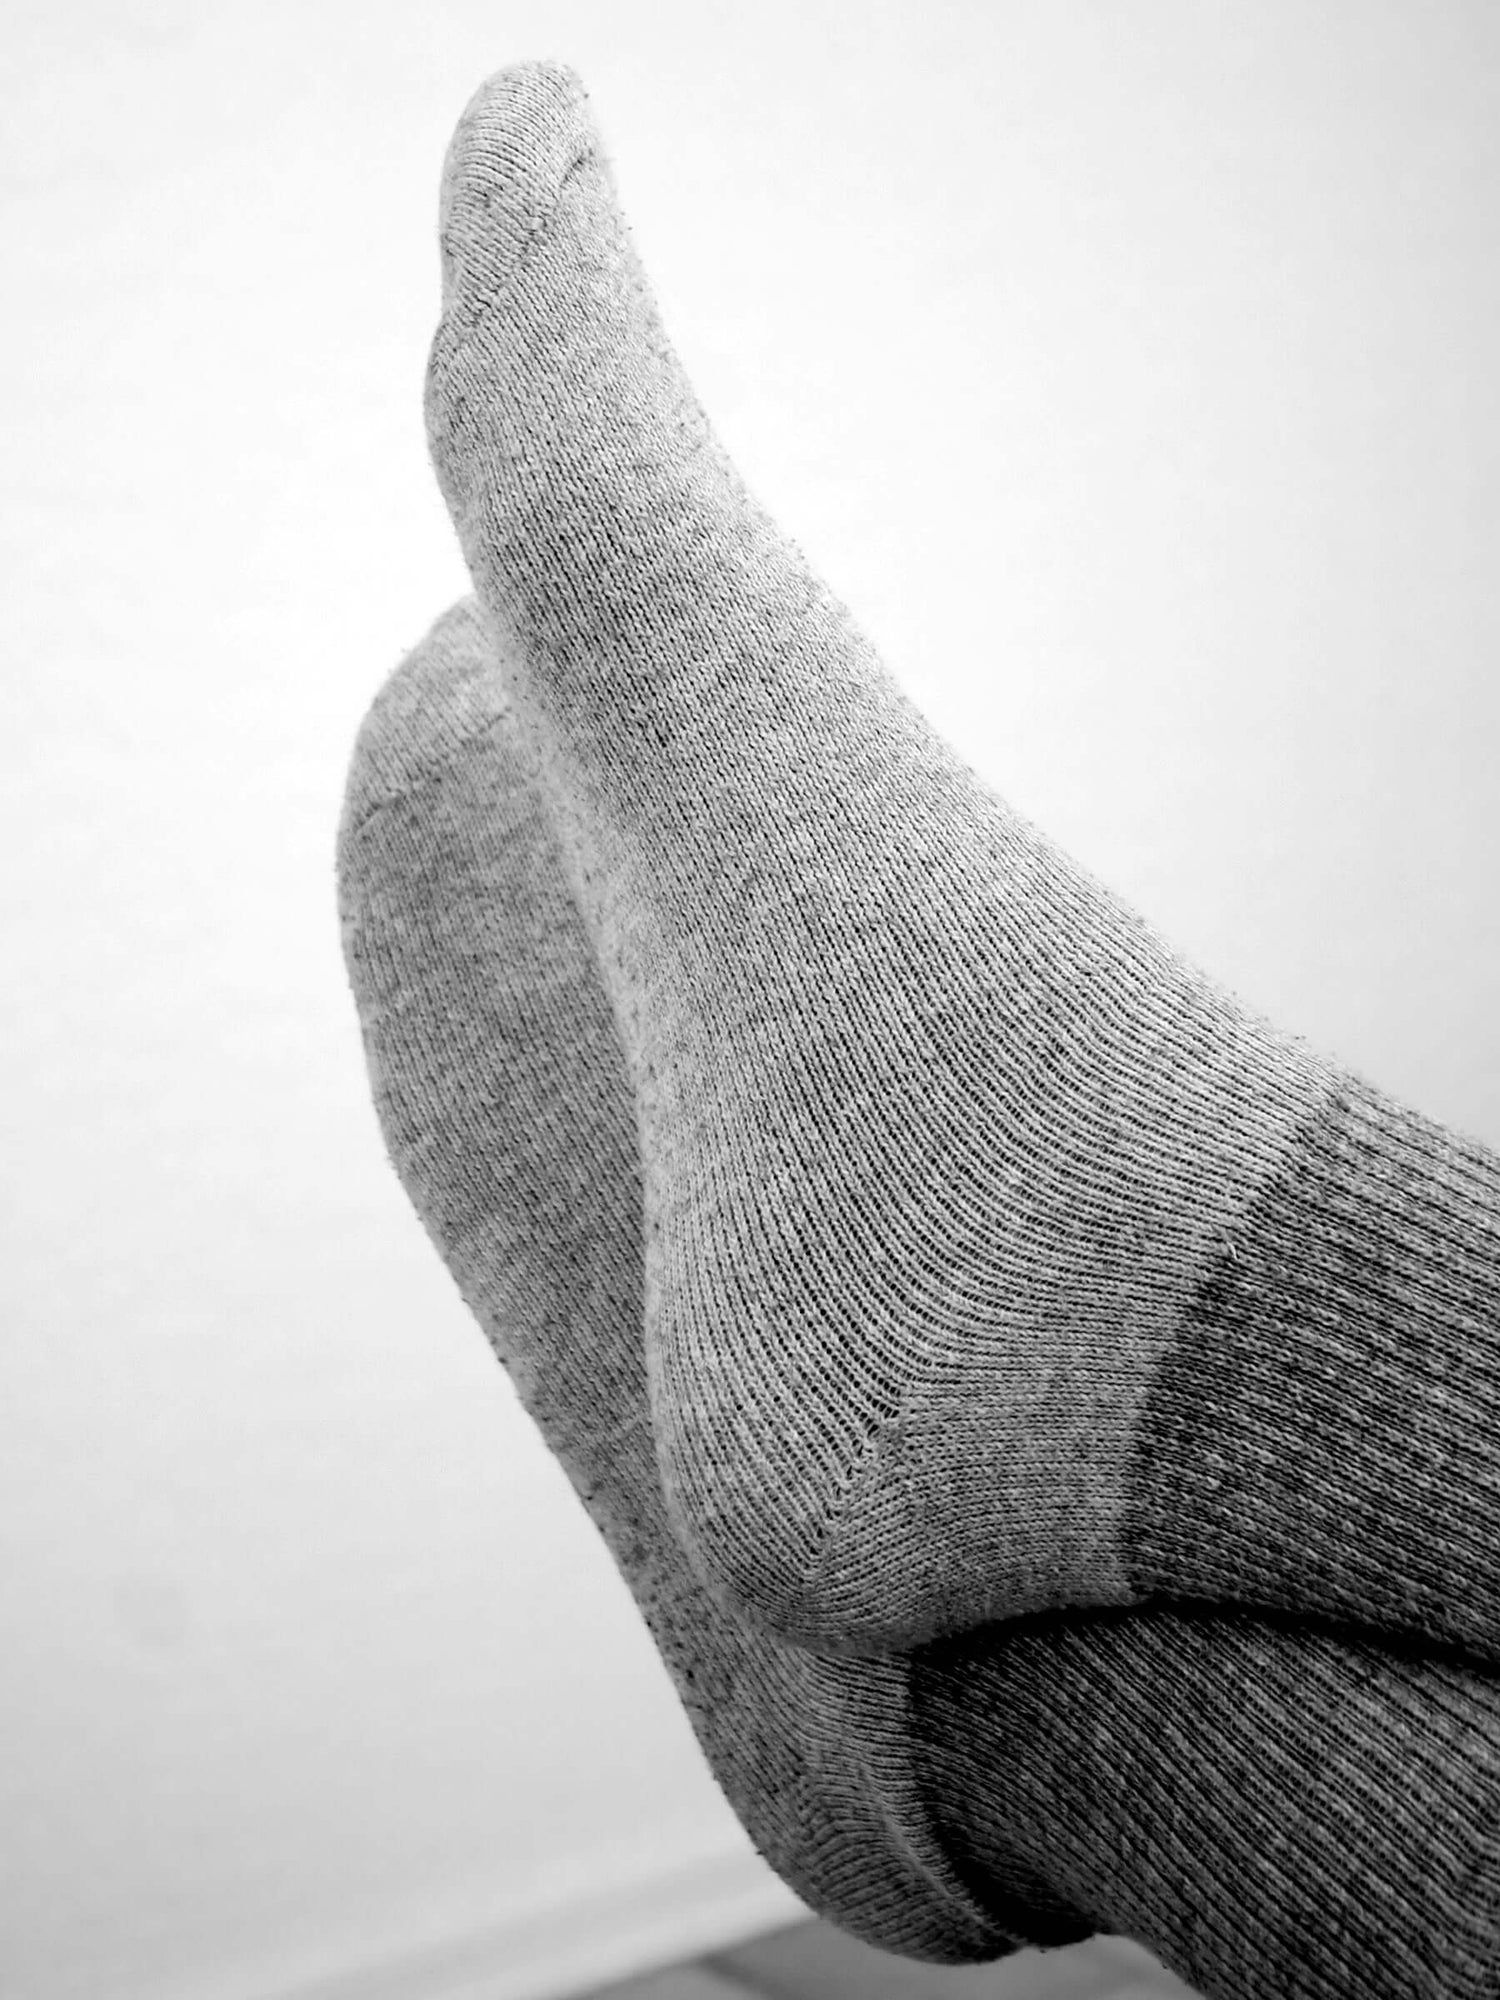 Polar Feet SUPER STRETCHY Fleece Socks - Flannel